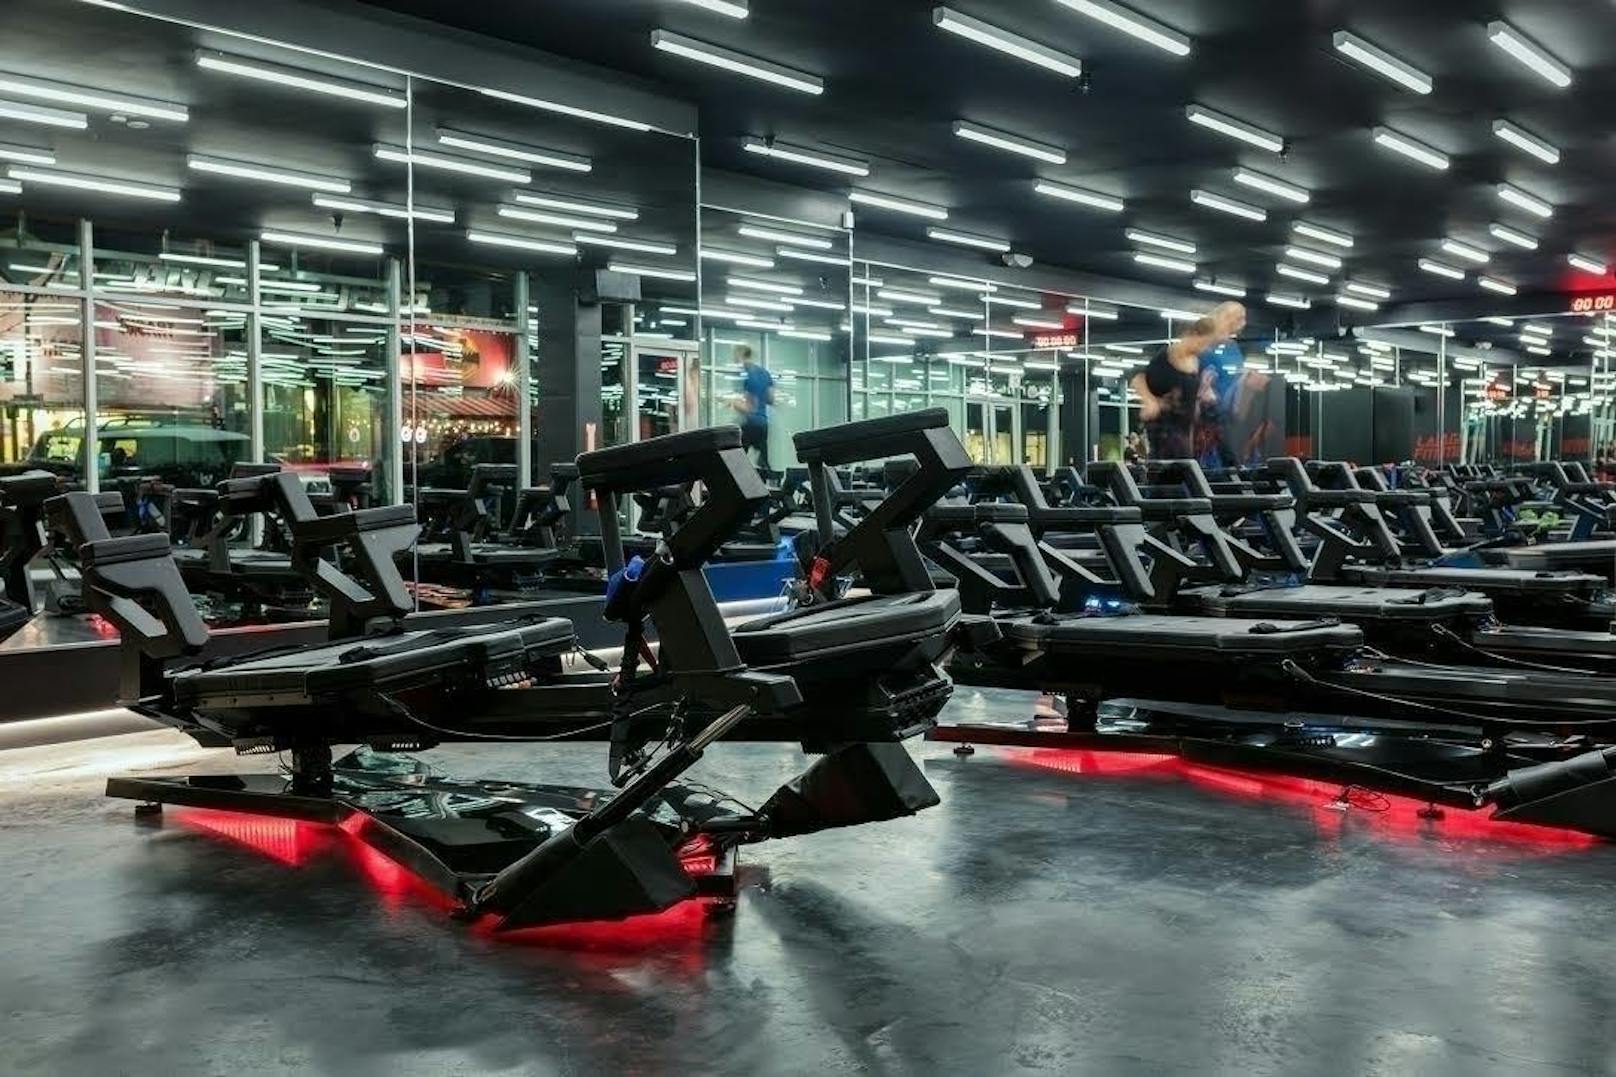 Und die Lagree-Maschinen stehen in über 300 Fitness-Studios in den USA, aber auch in Europa. Bis nach Deutschland und die Schweiz haben die Geräte es schon geschafft. Österreich muss leider noch warten.